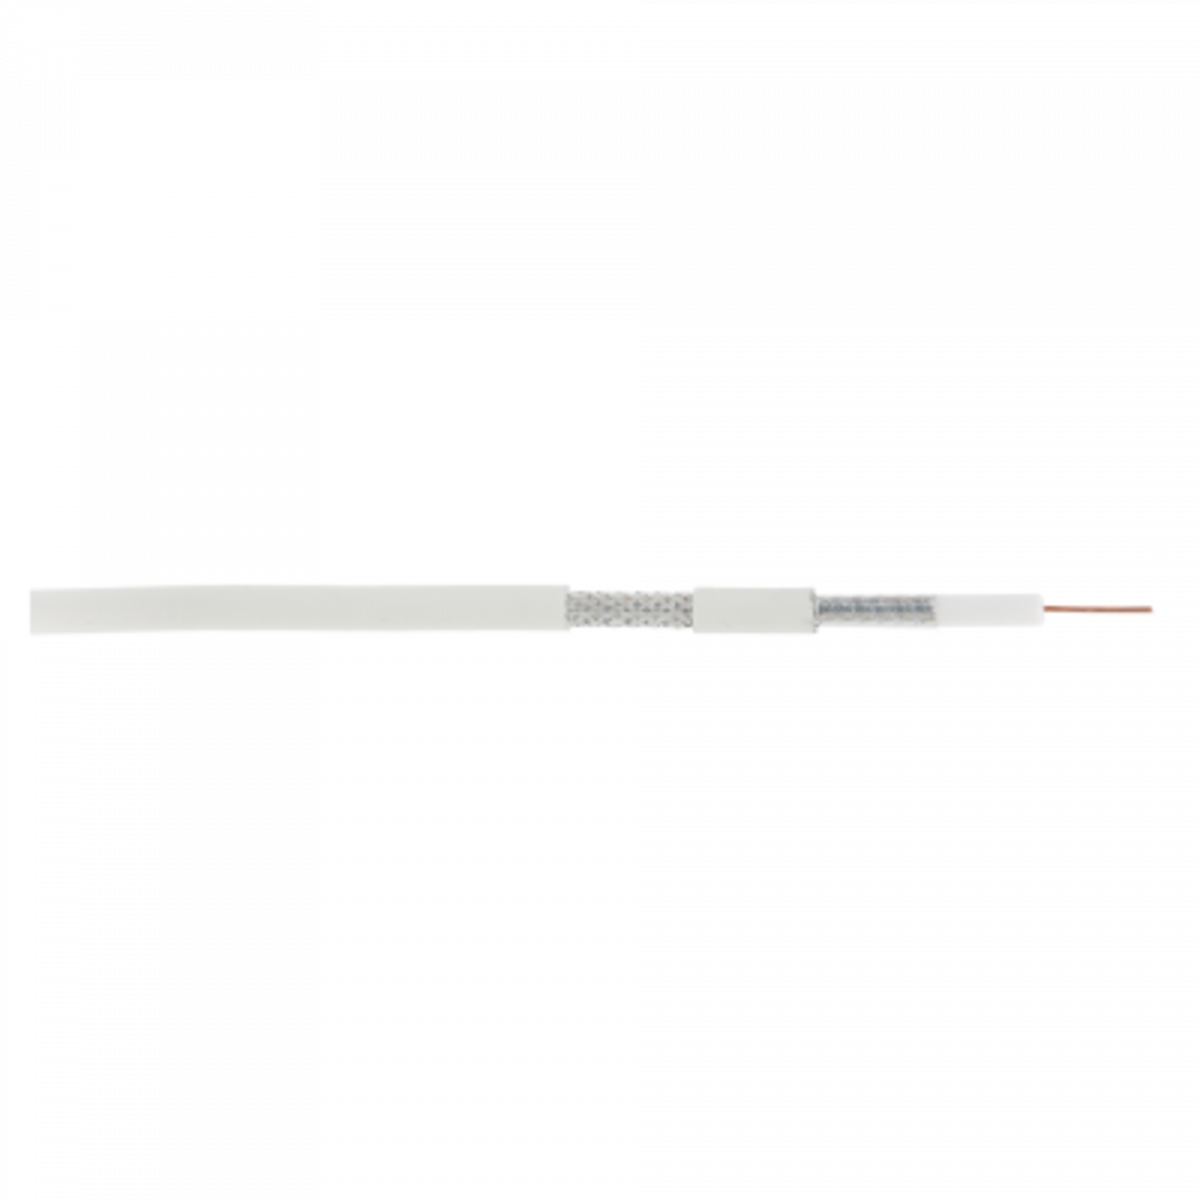 Кабель NETLAN коаксиальный, RG-6 (75 Ом), одножильный, CCS (омедненная сталь), внутренний, PVC нг(A), белый, 100м